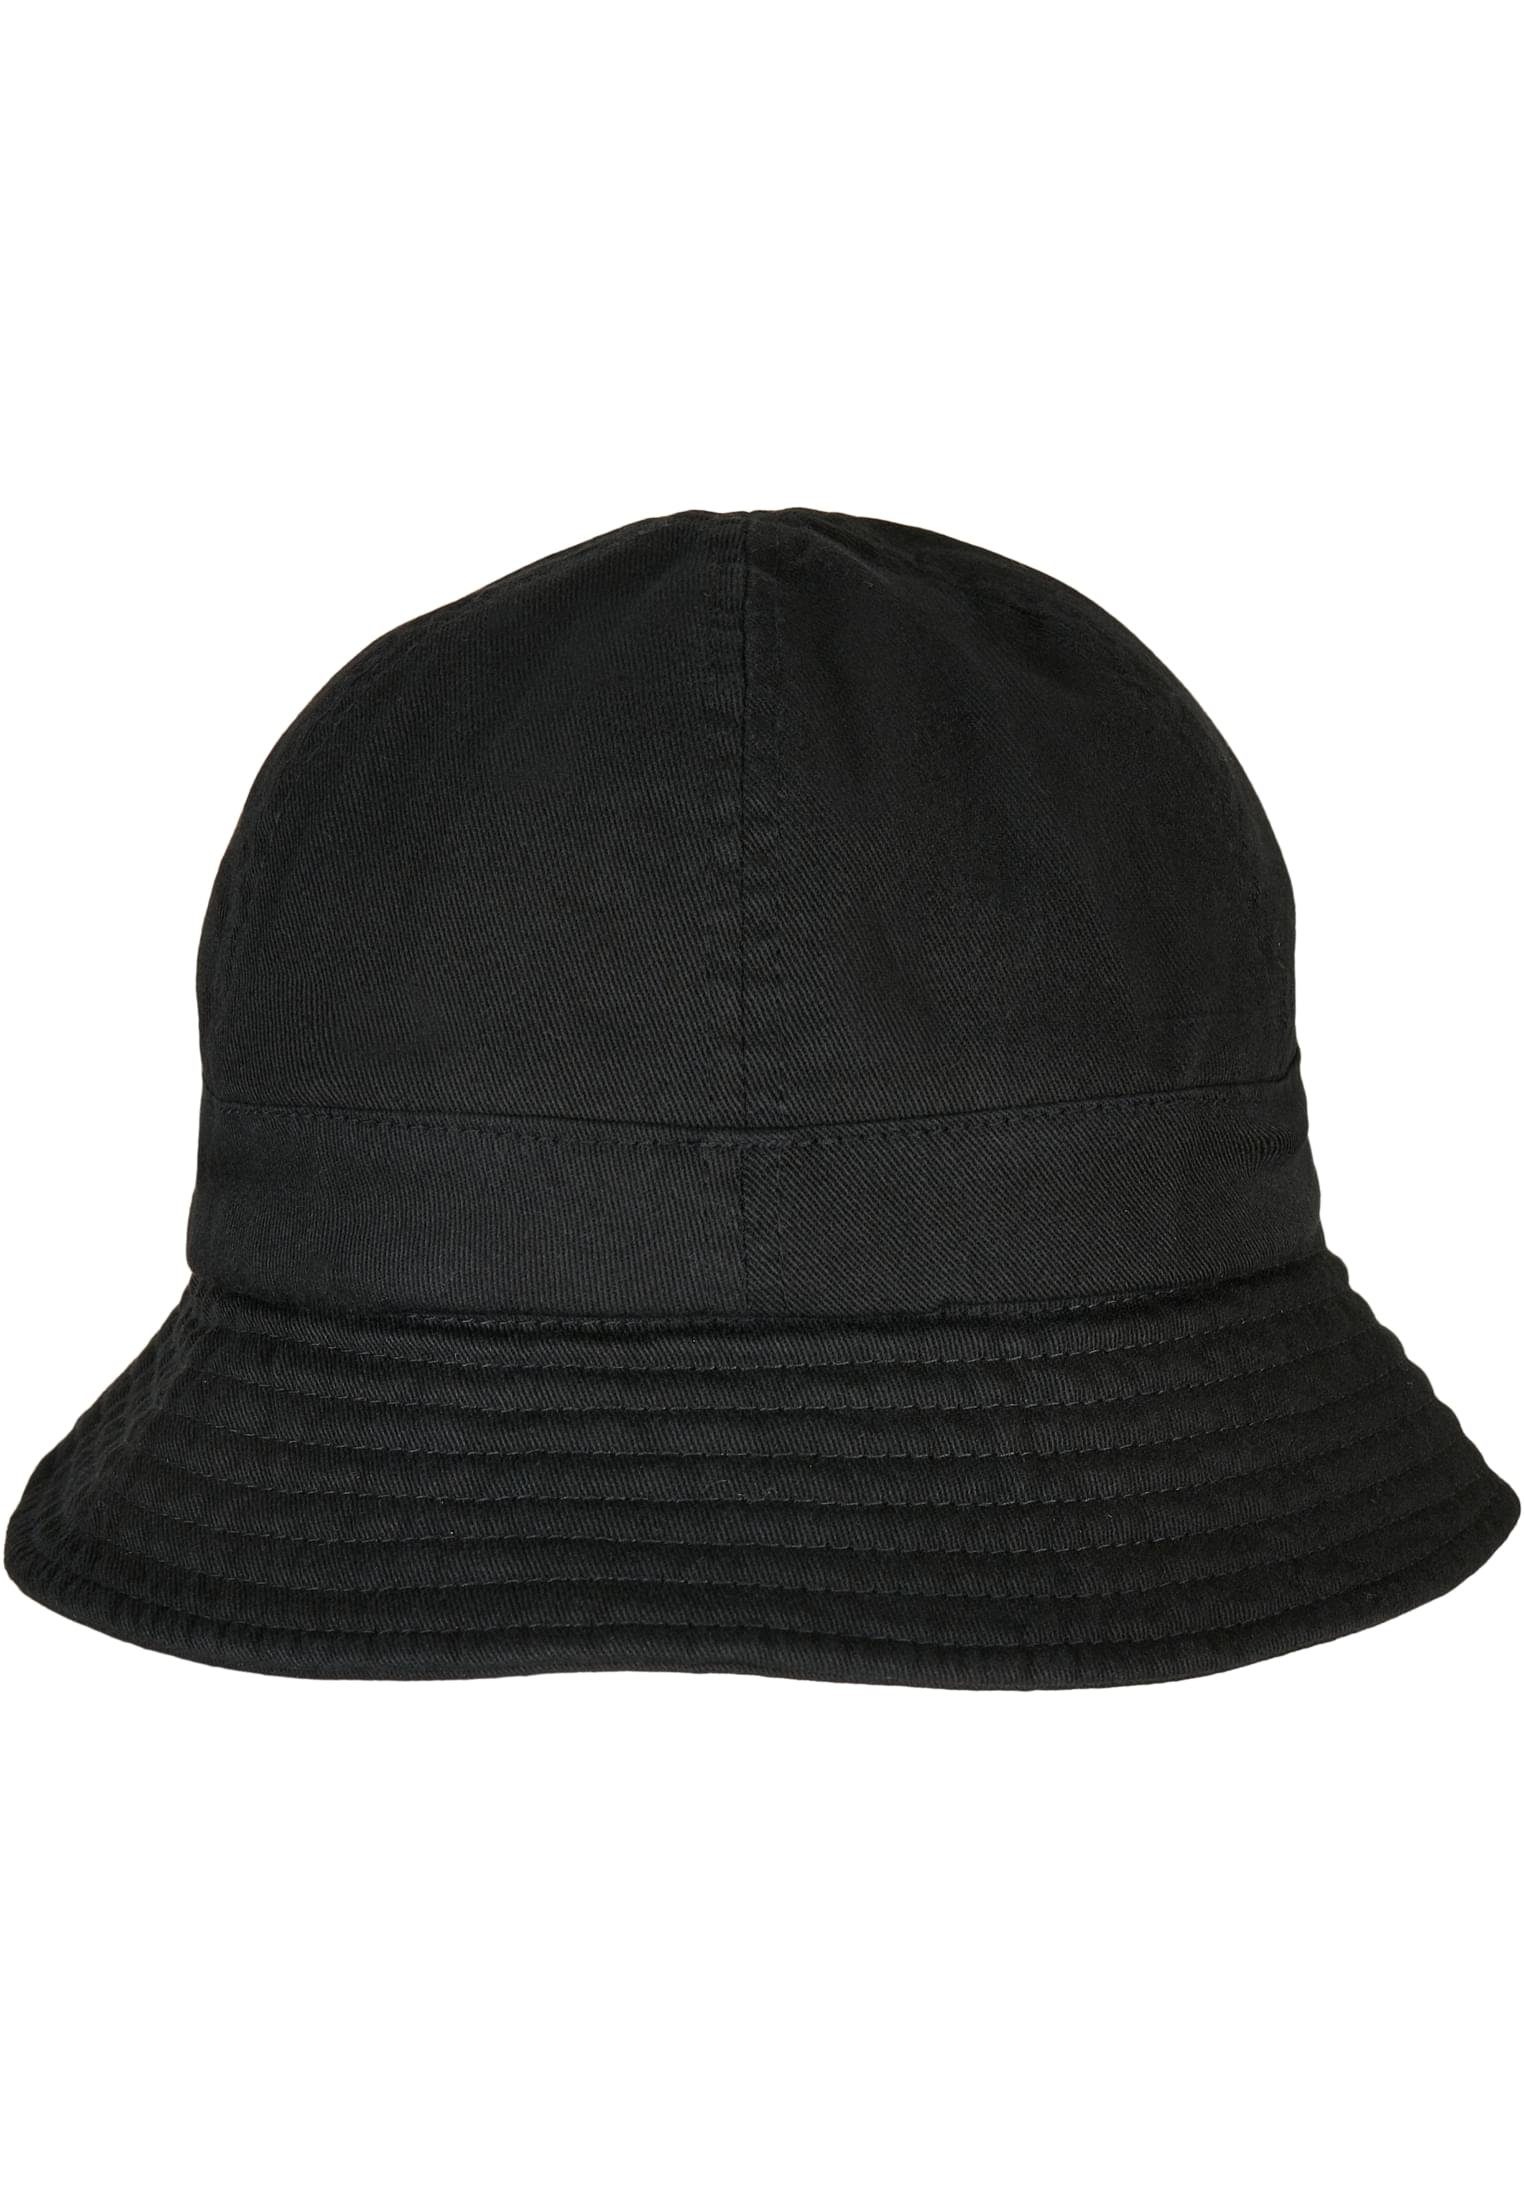 Flexfit Flex Cap Accessoires Washing Flexfit Tennis Eco Notop Hat black